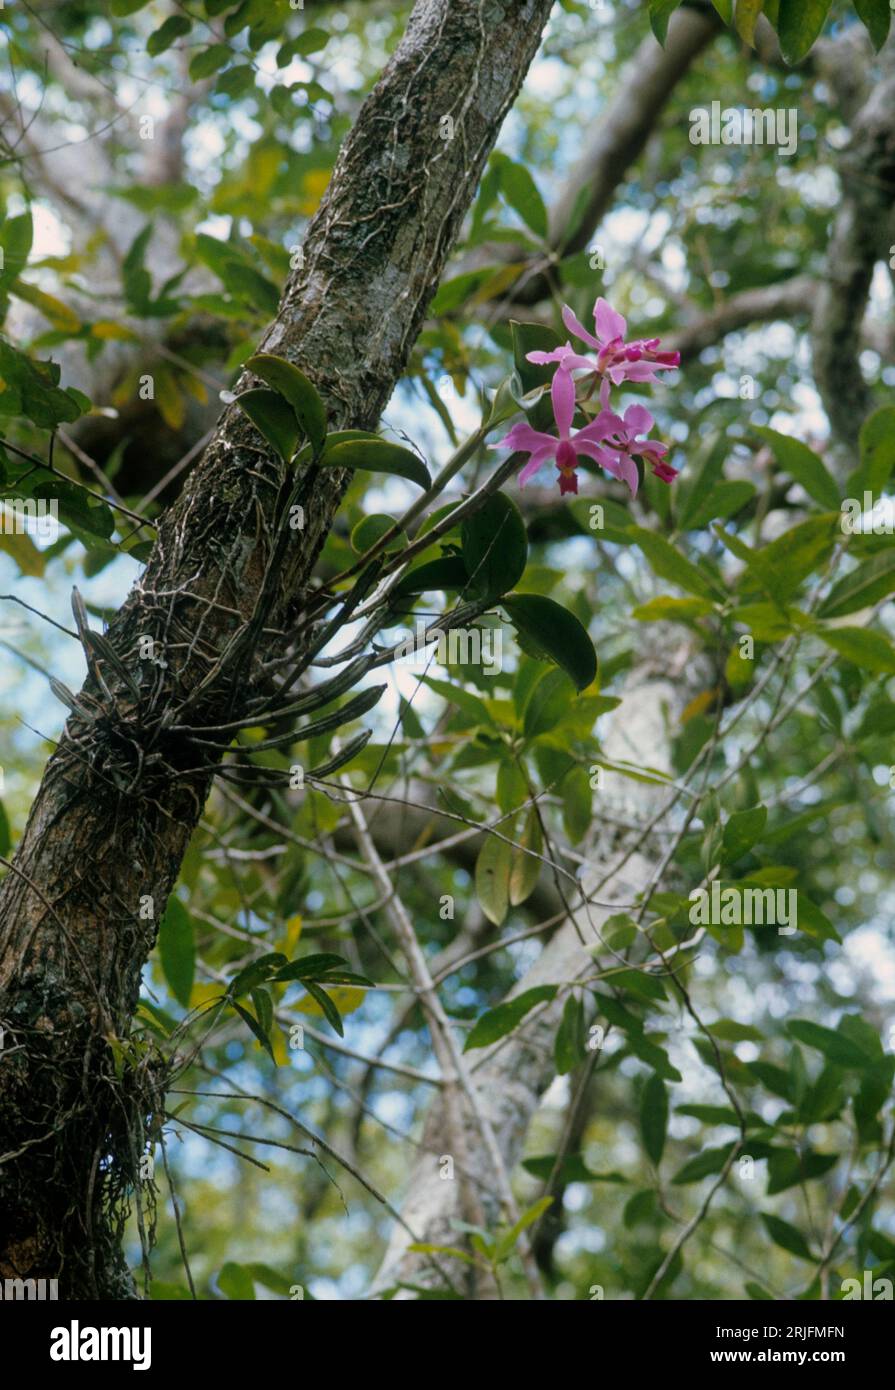 Orchidée épiphyte Cattleya dans la galerie forestière, biome de savane, Venezuela. Banque D'Images